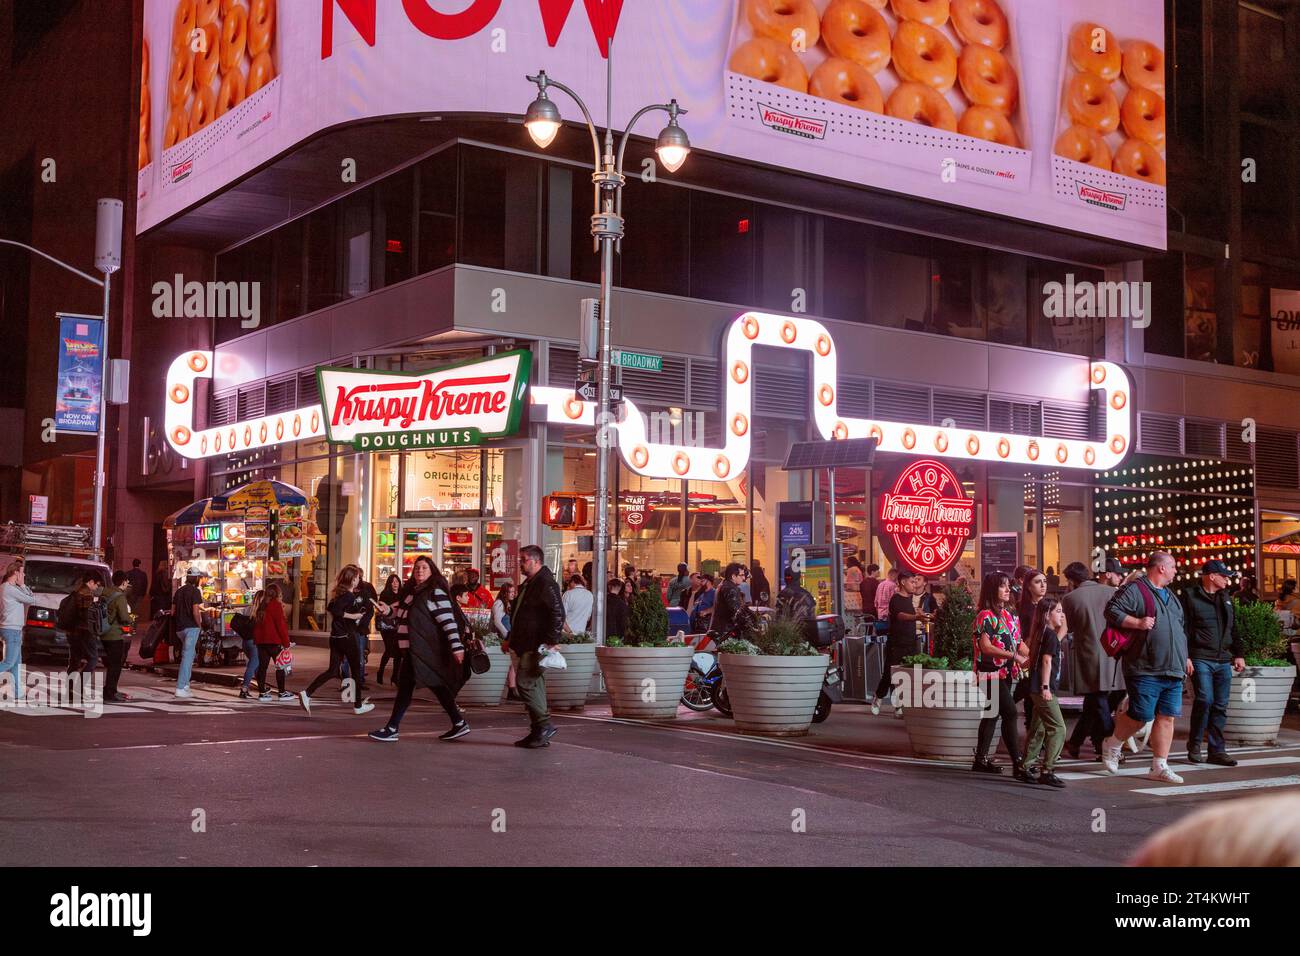 Magasin de beignets Krispy Kreme, Times Square, New York, États-Unis d'Amérique. Banque D'Images